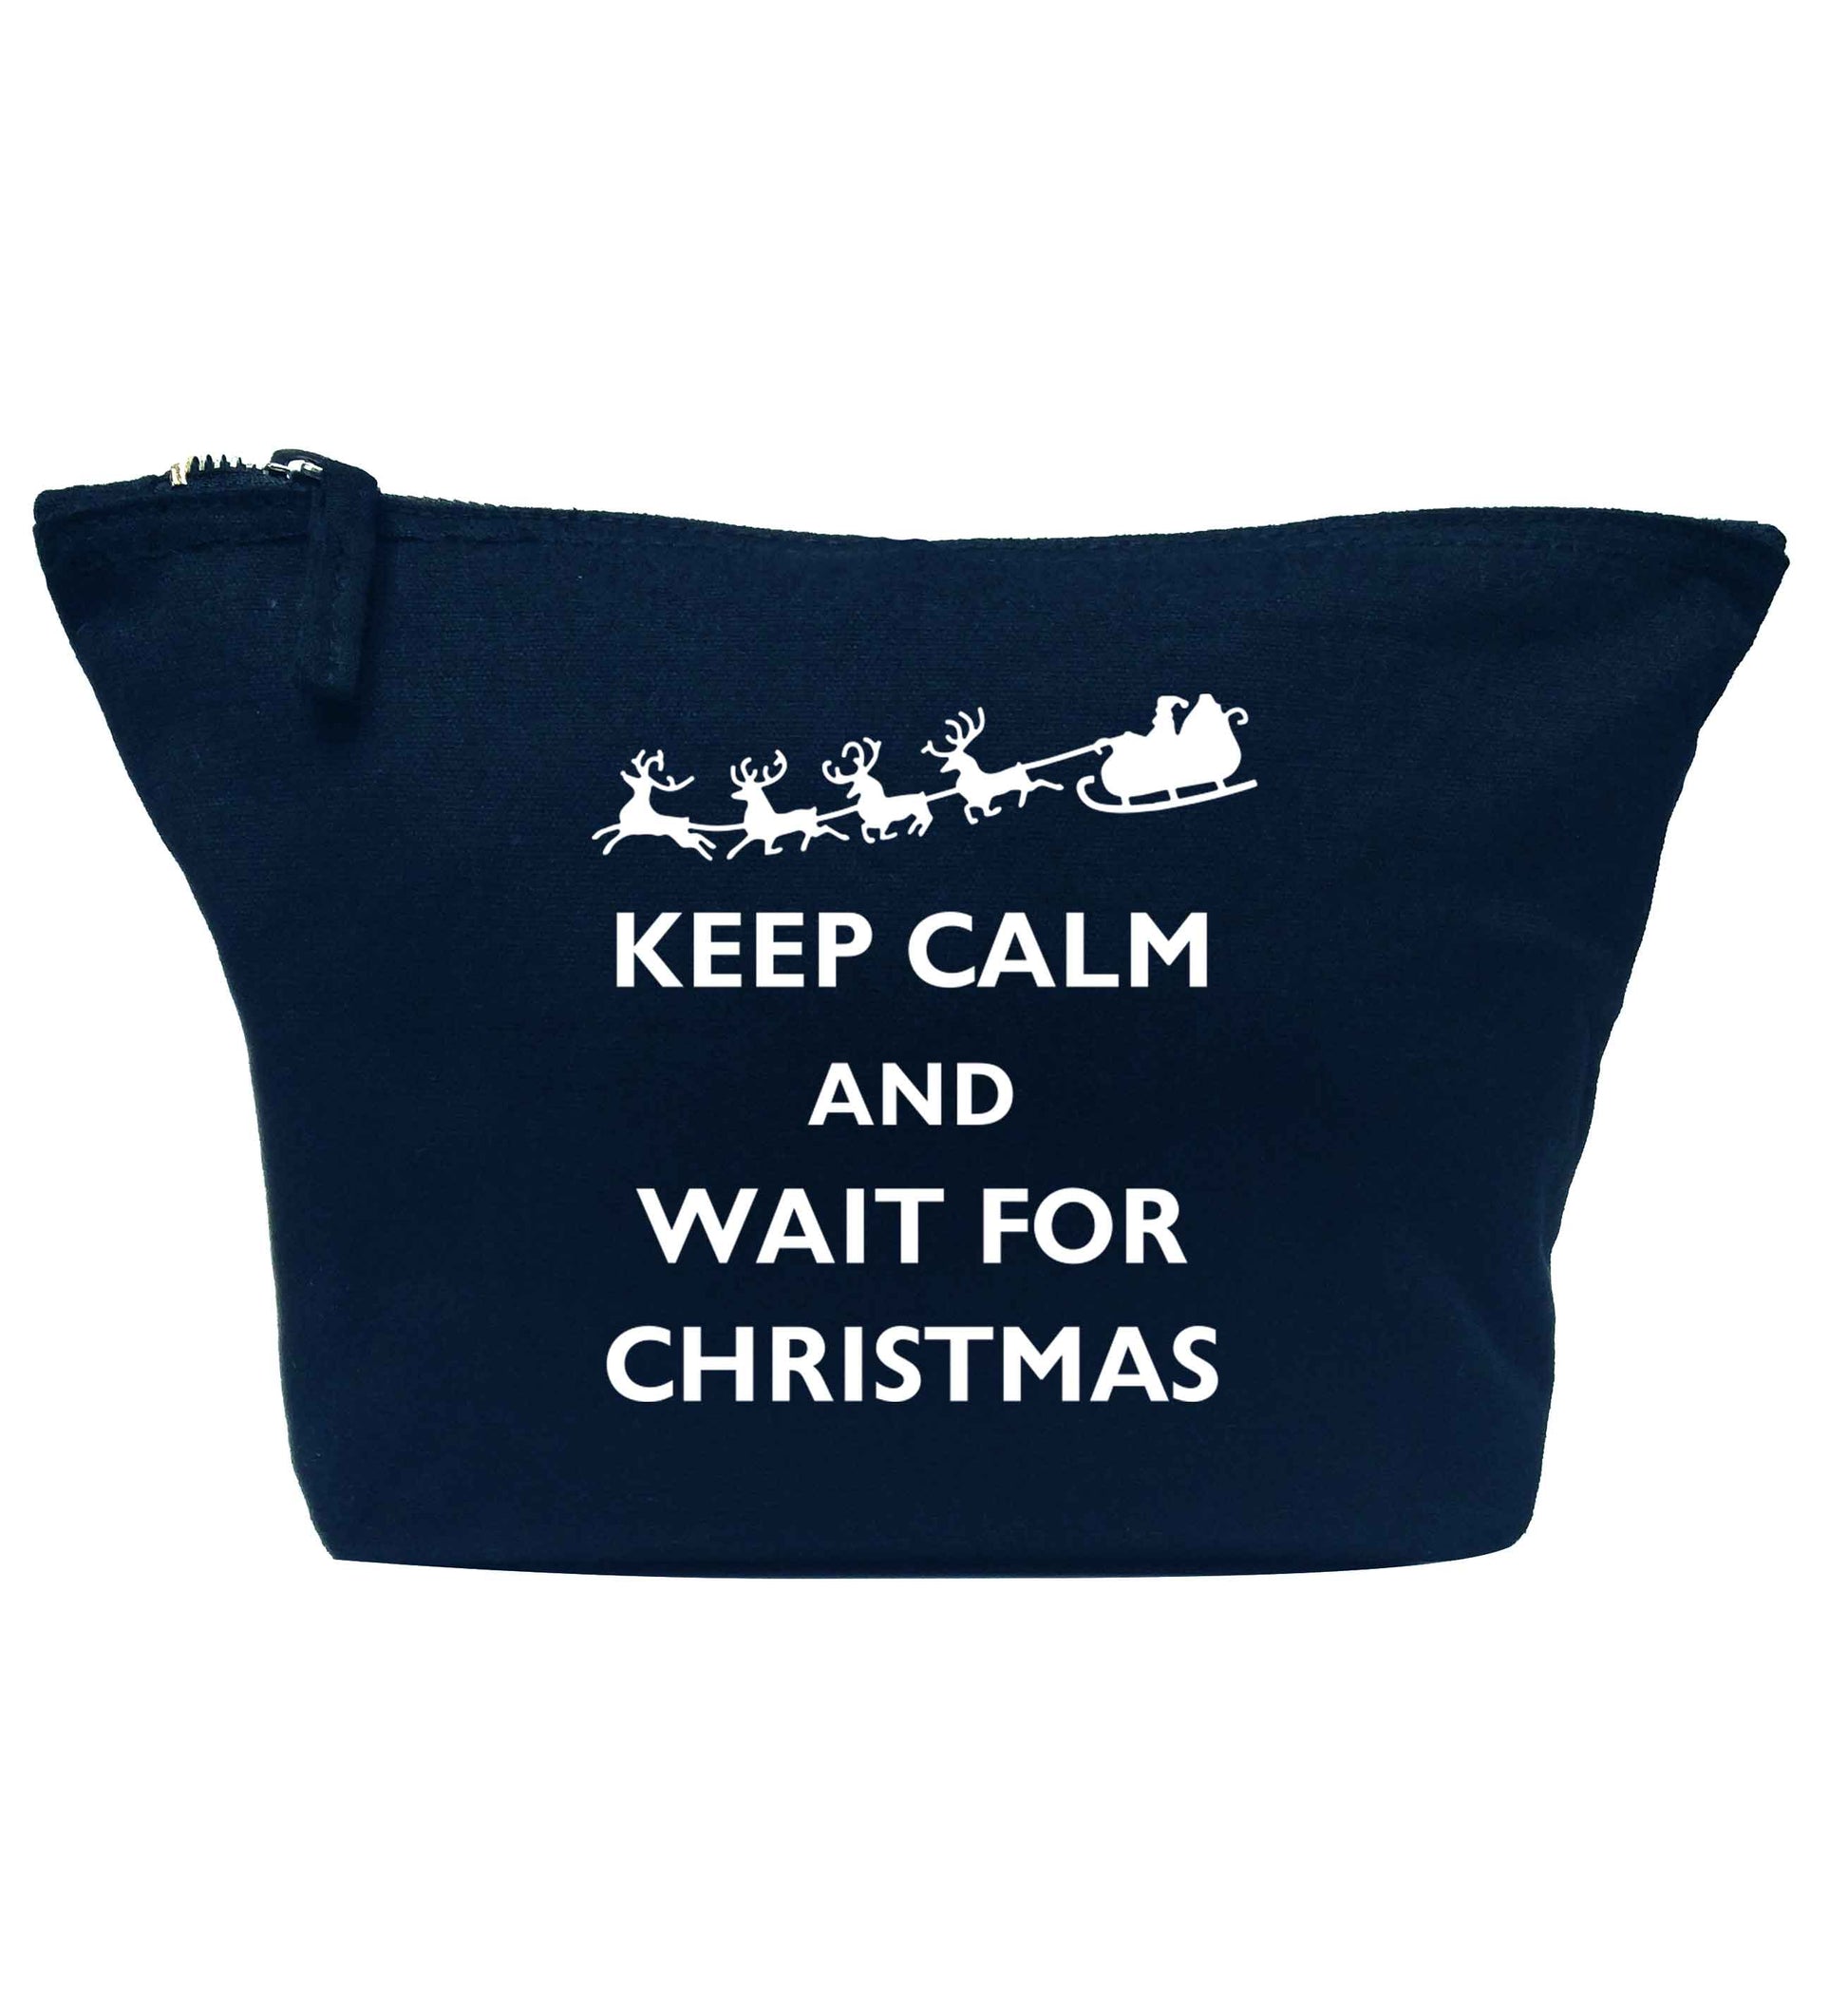 Keep calm and wait for Christmas navy makeup bag